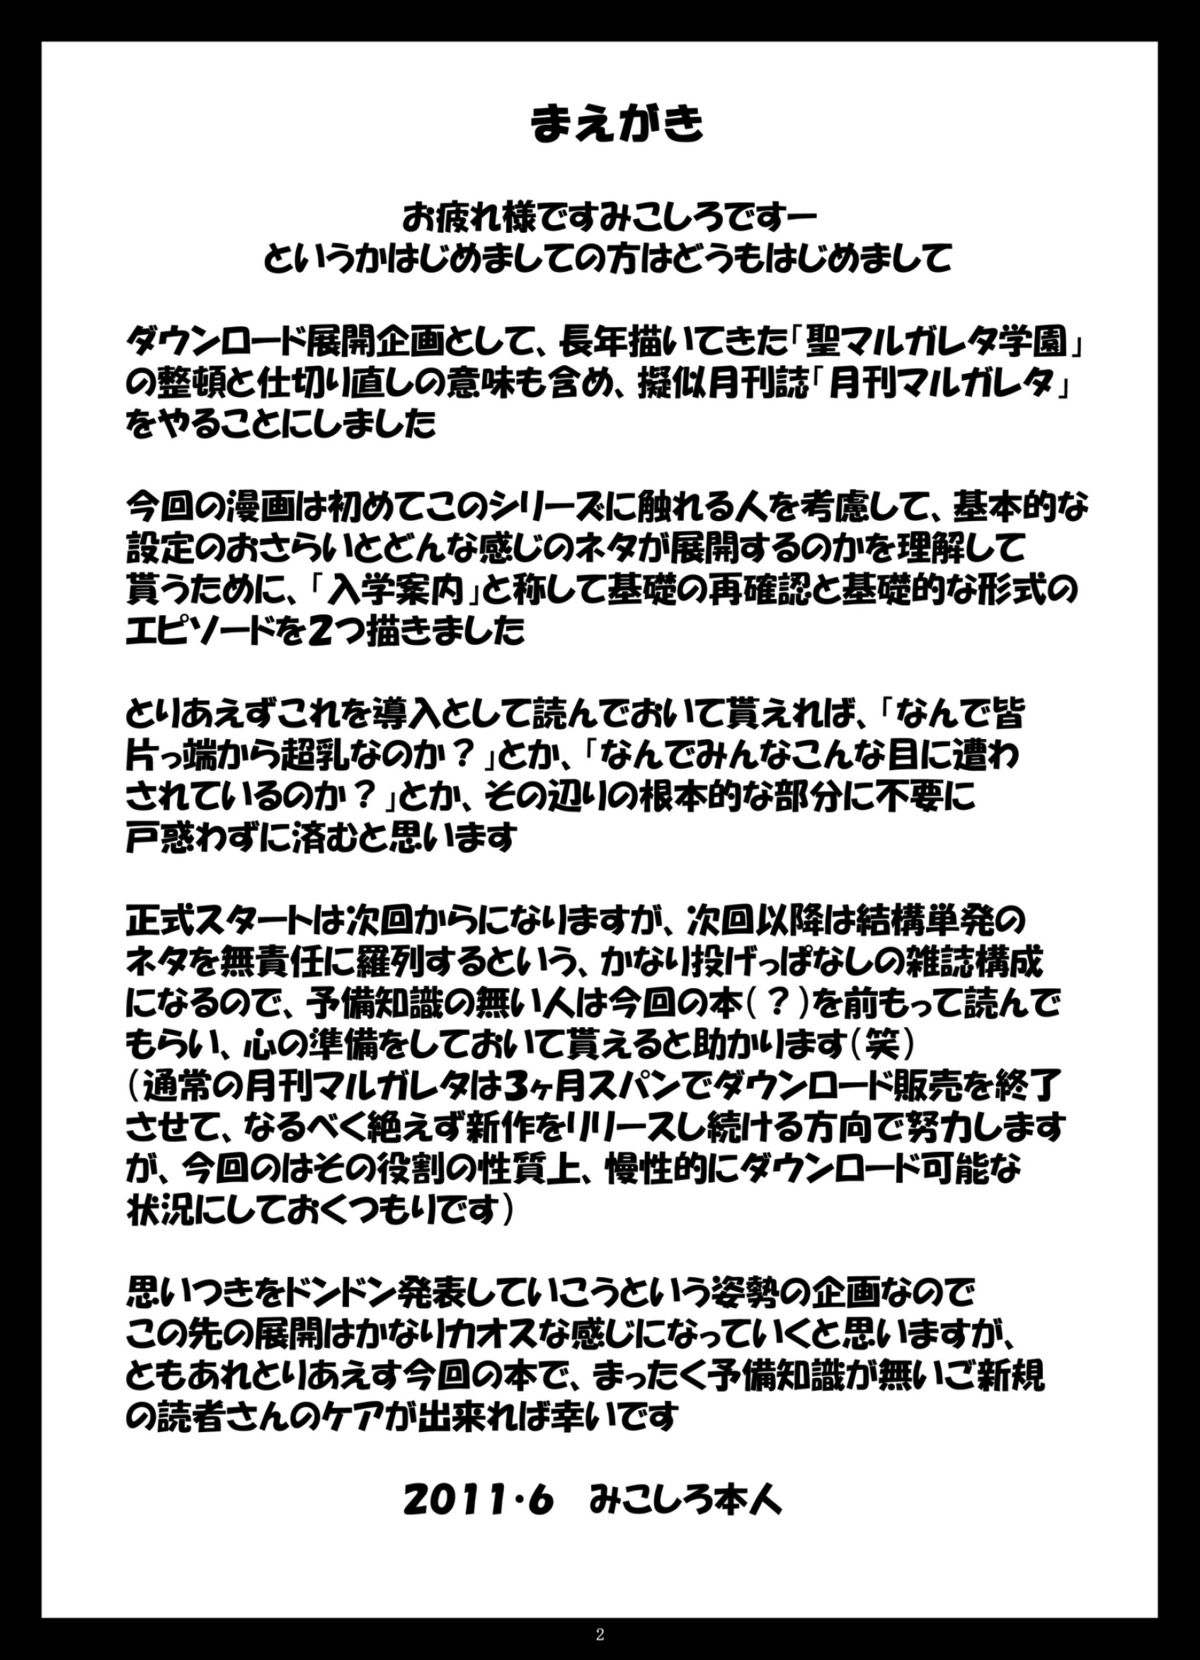 月刊マルガレタ創刊準備号「入園案内」vol.000